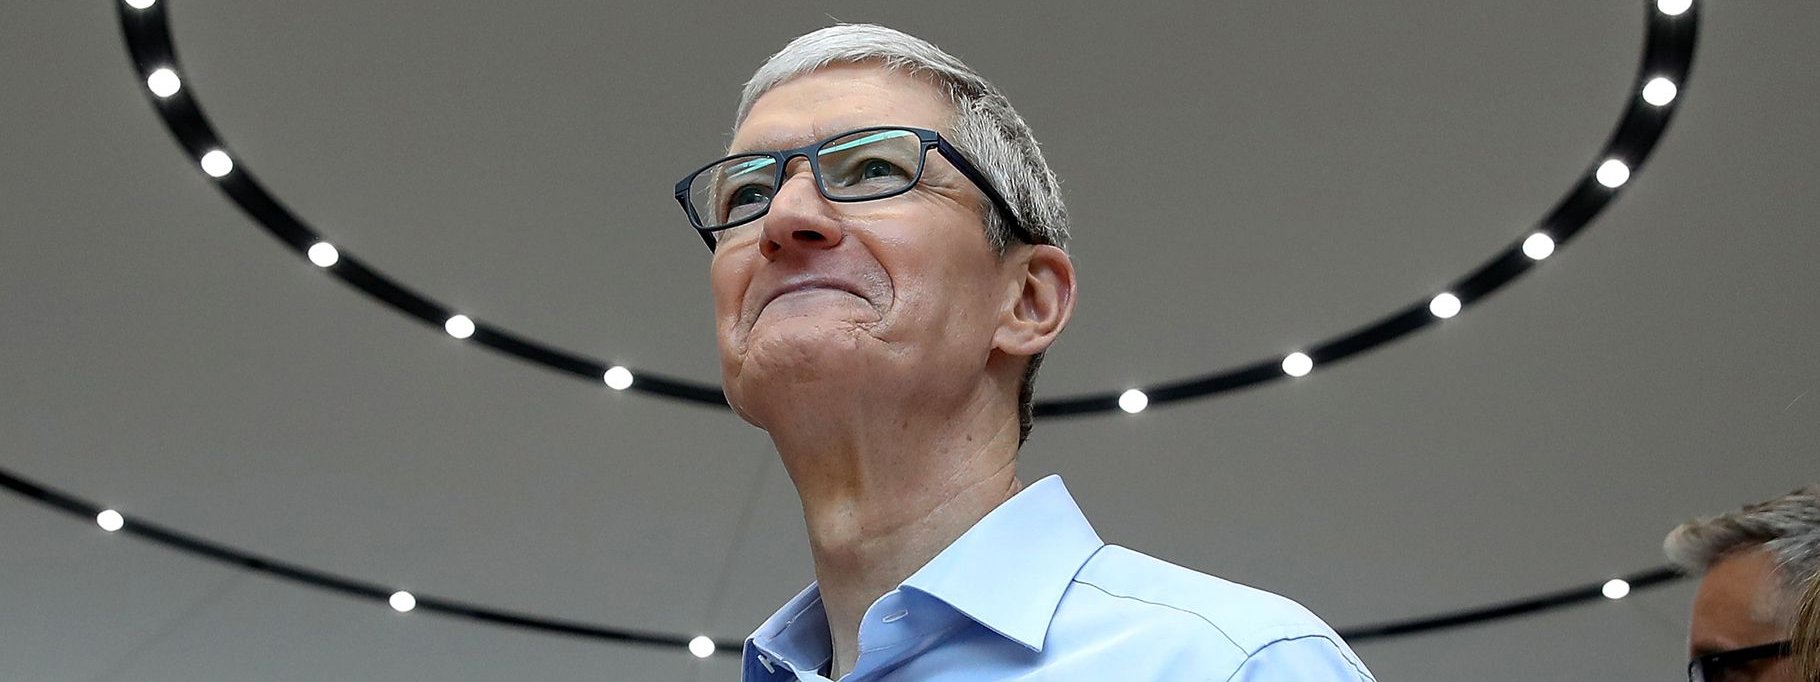 Tim Cook: Apple chưa làm kính AR vì chưa đem lại trải nghiệm người dùng tuyệt vời